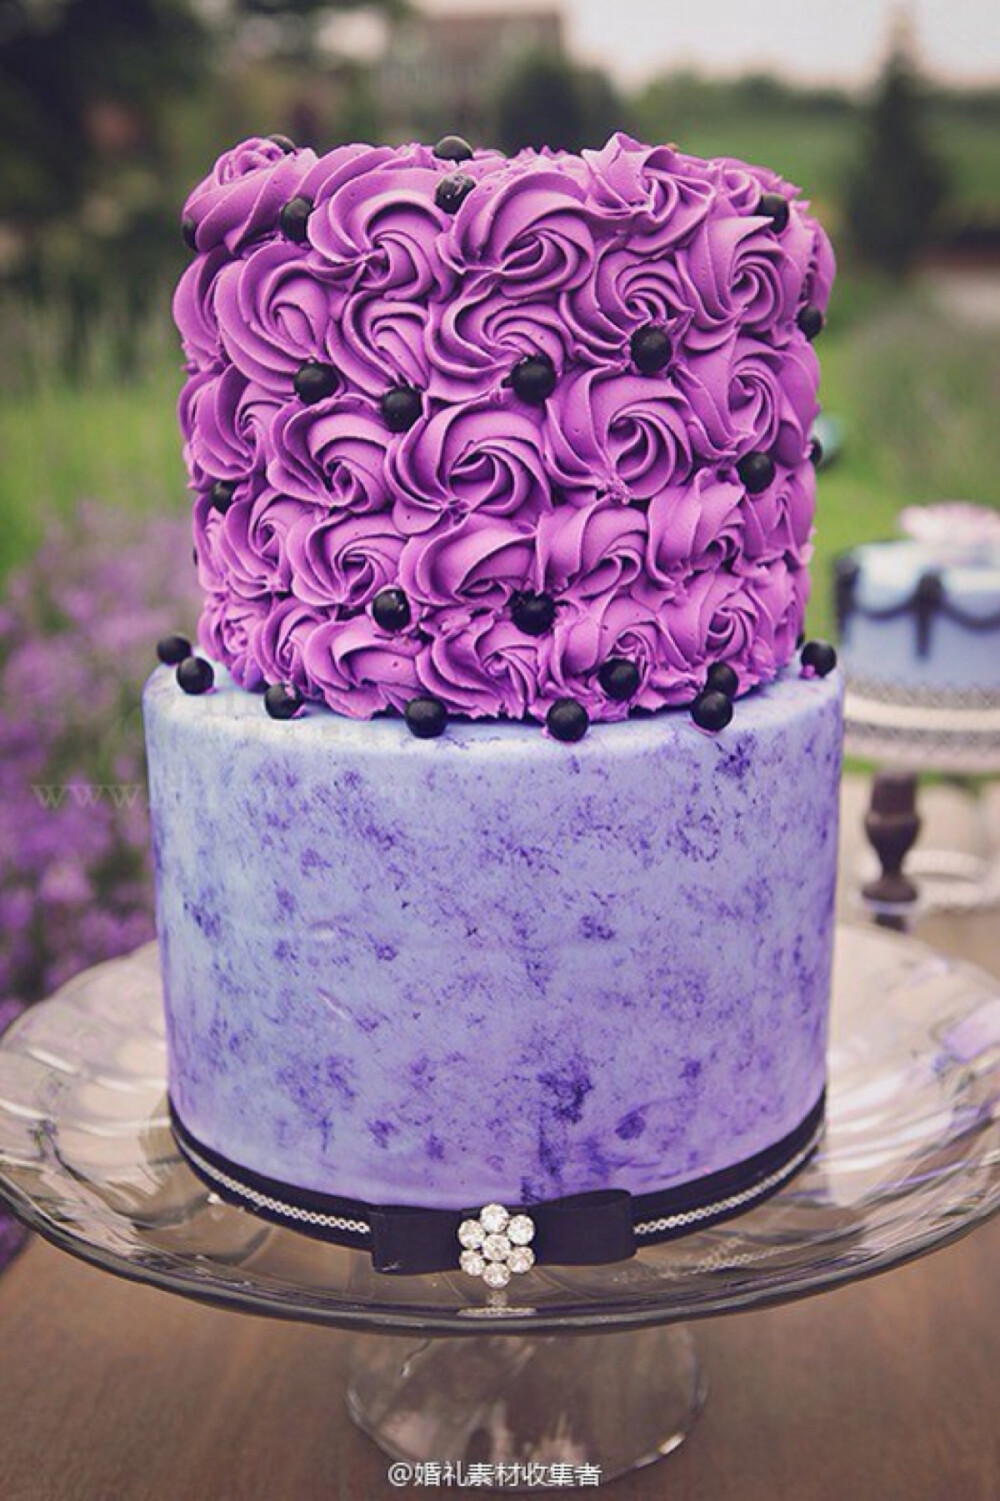 翻糖婚礼鲜花紫色蛋糕甜点